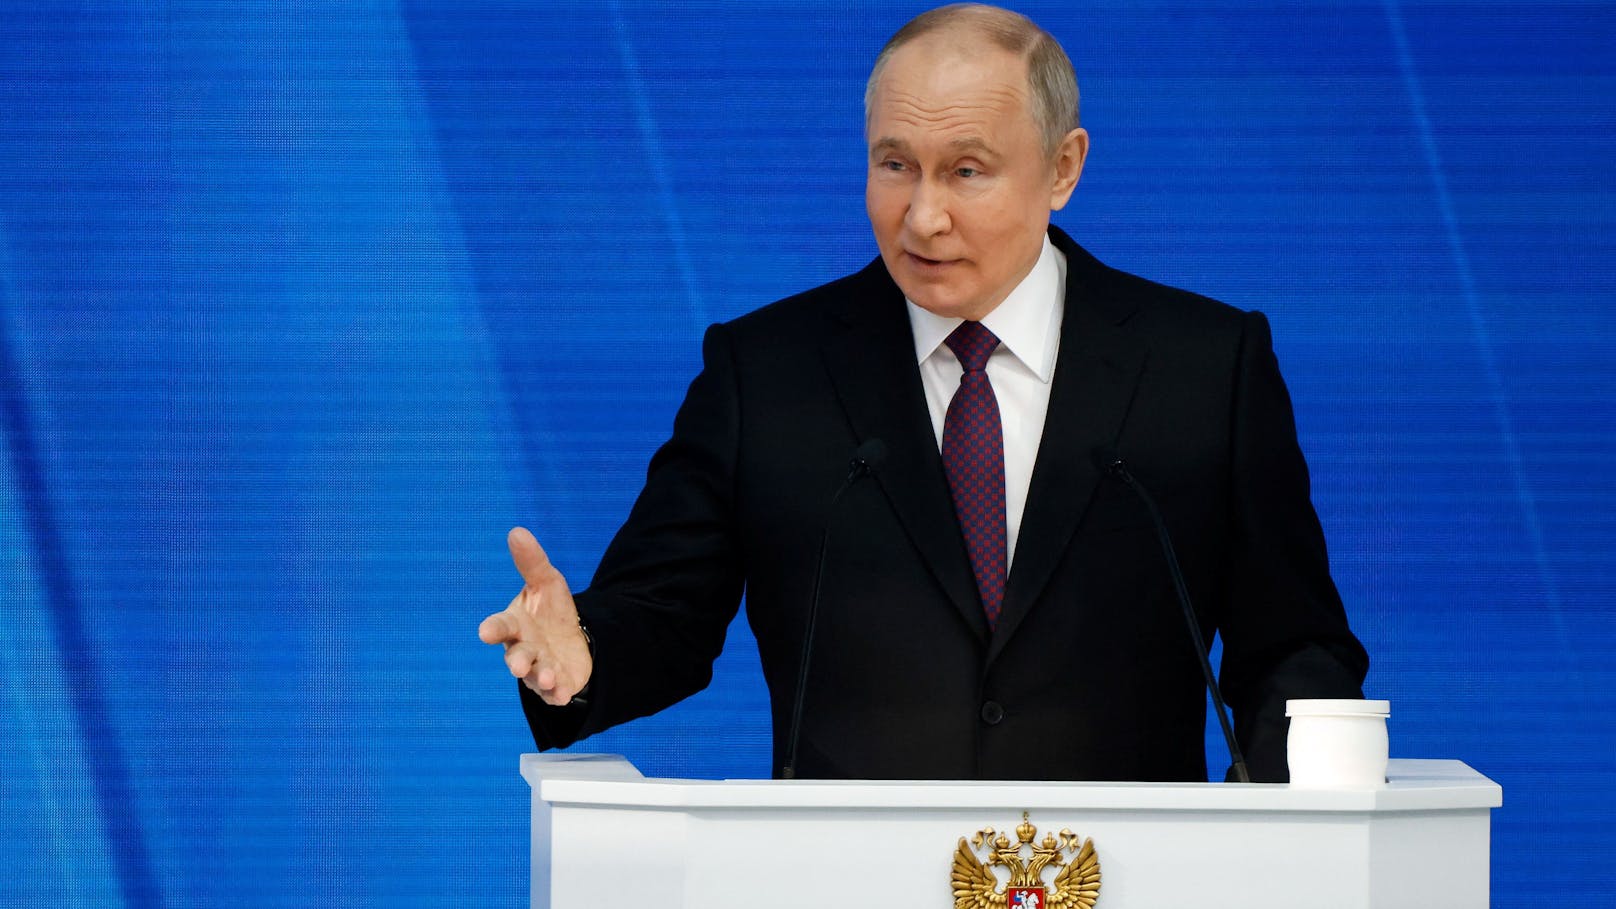 Putin droht jetzt offen mit Angriff auf den Westen